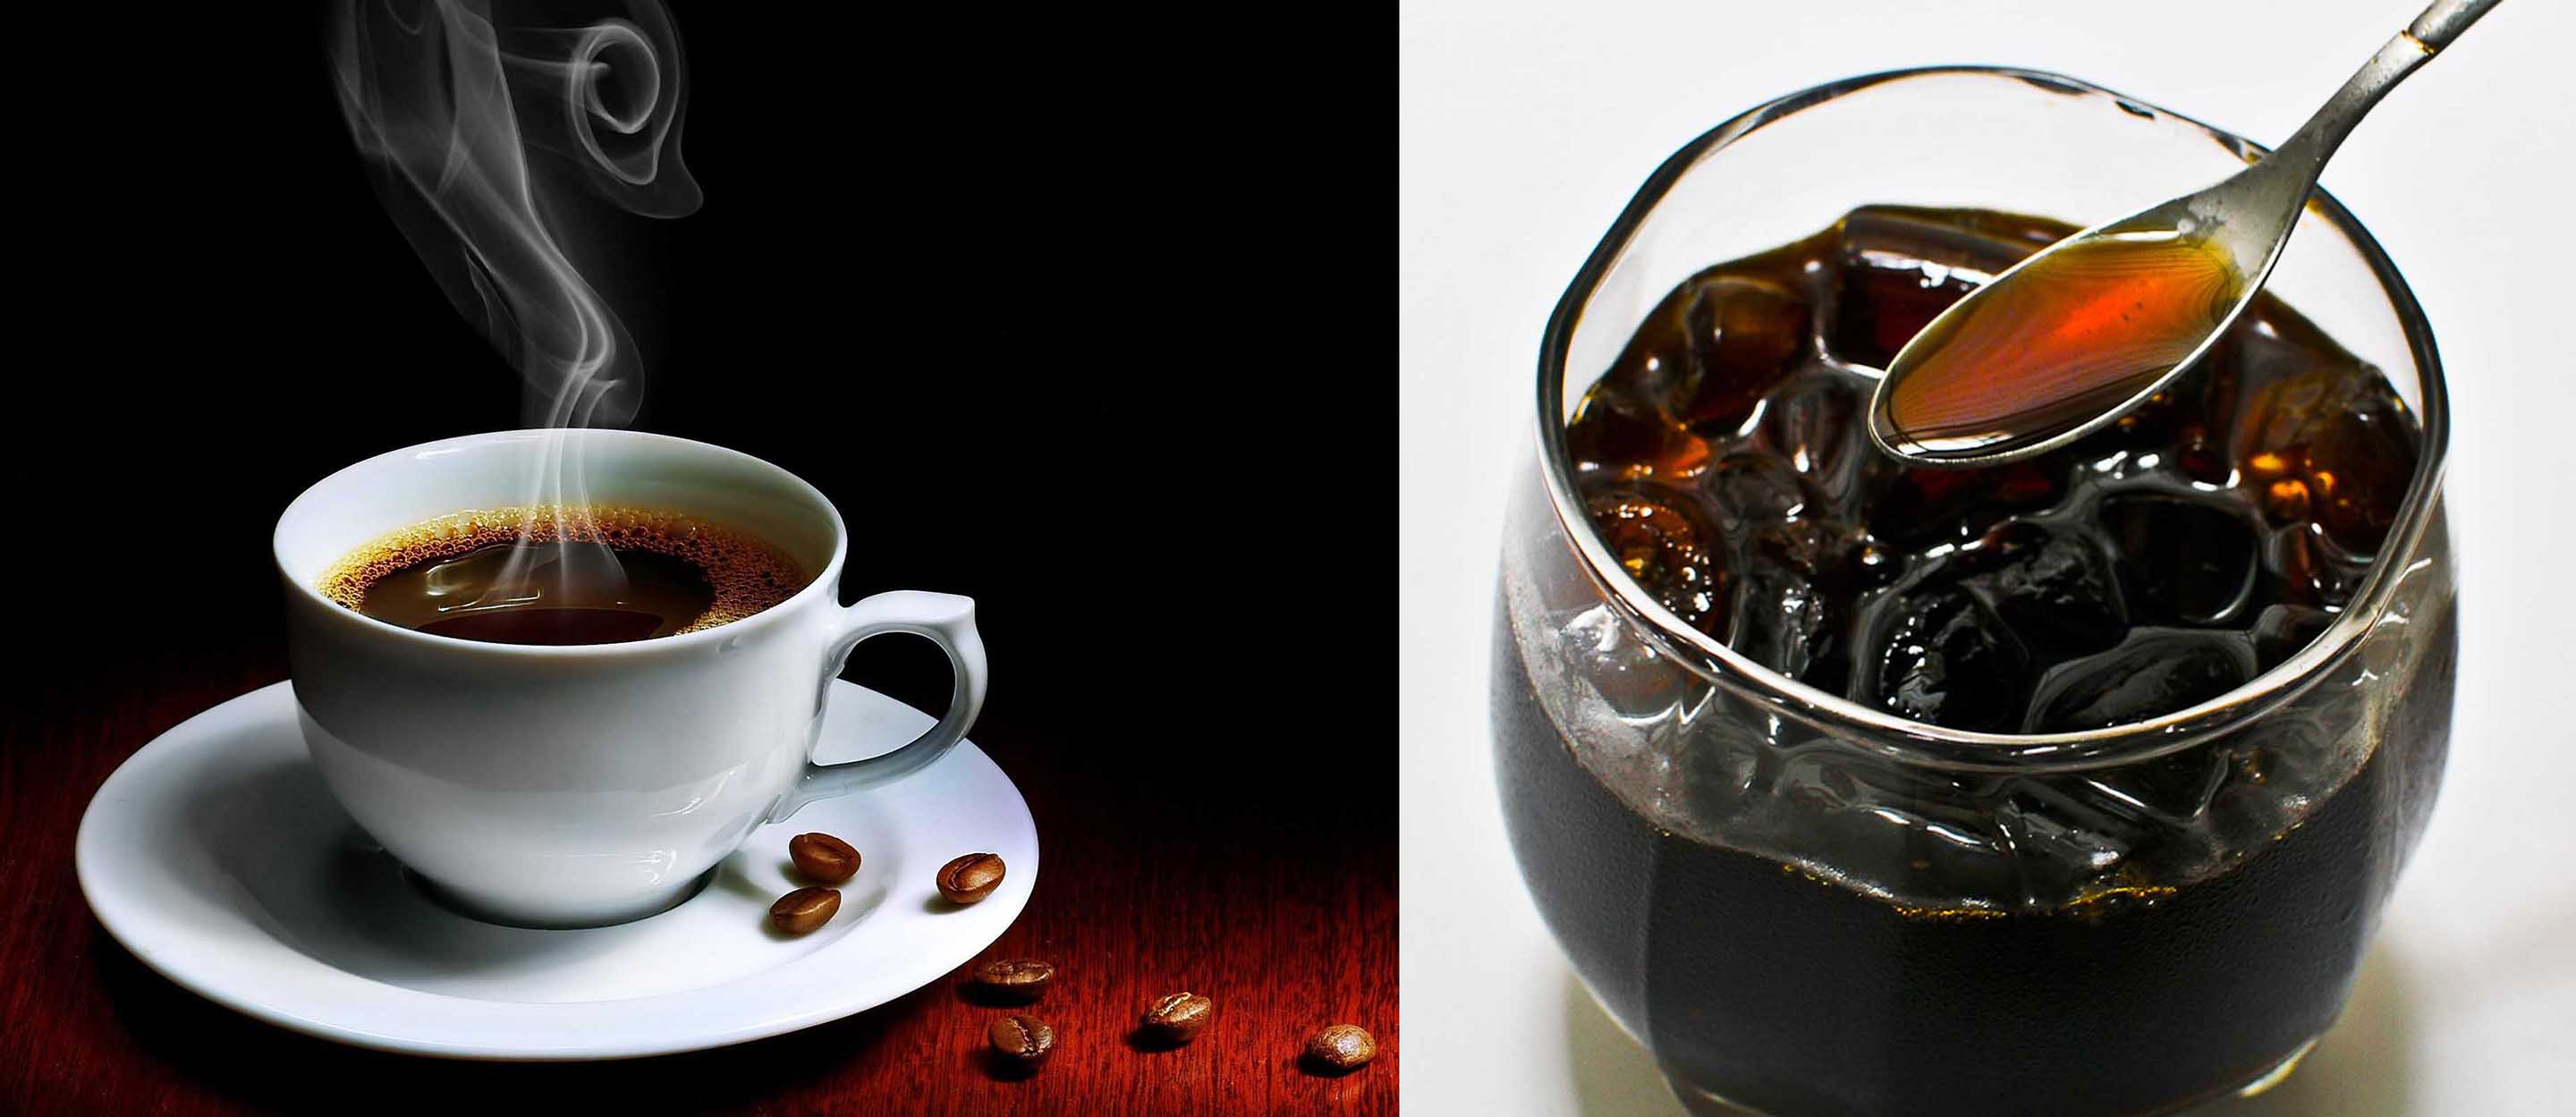 Cách phân biệt cà phê giả đơn giản nhất